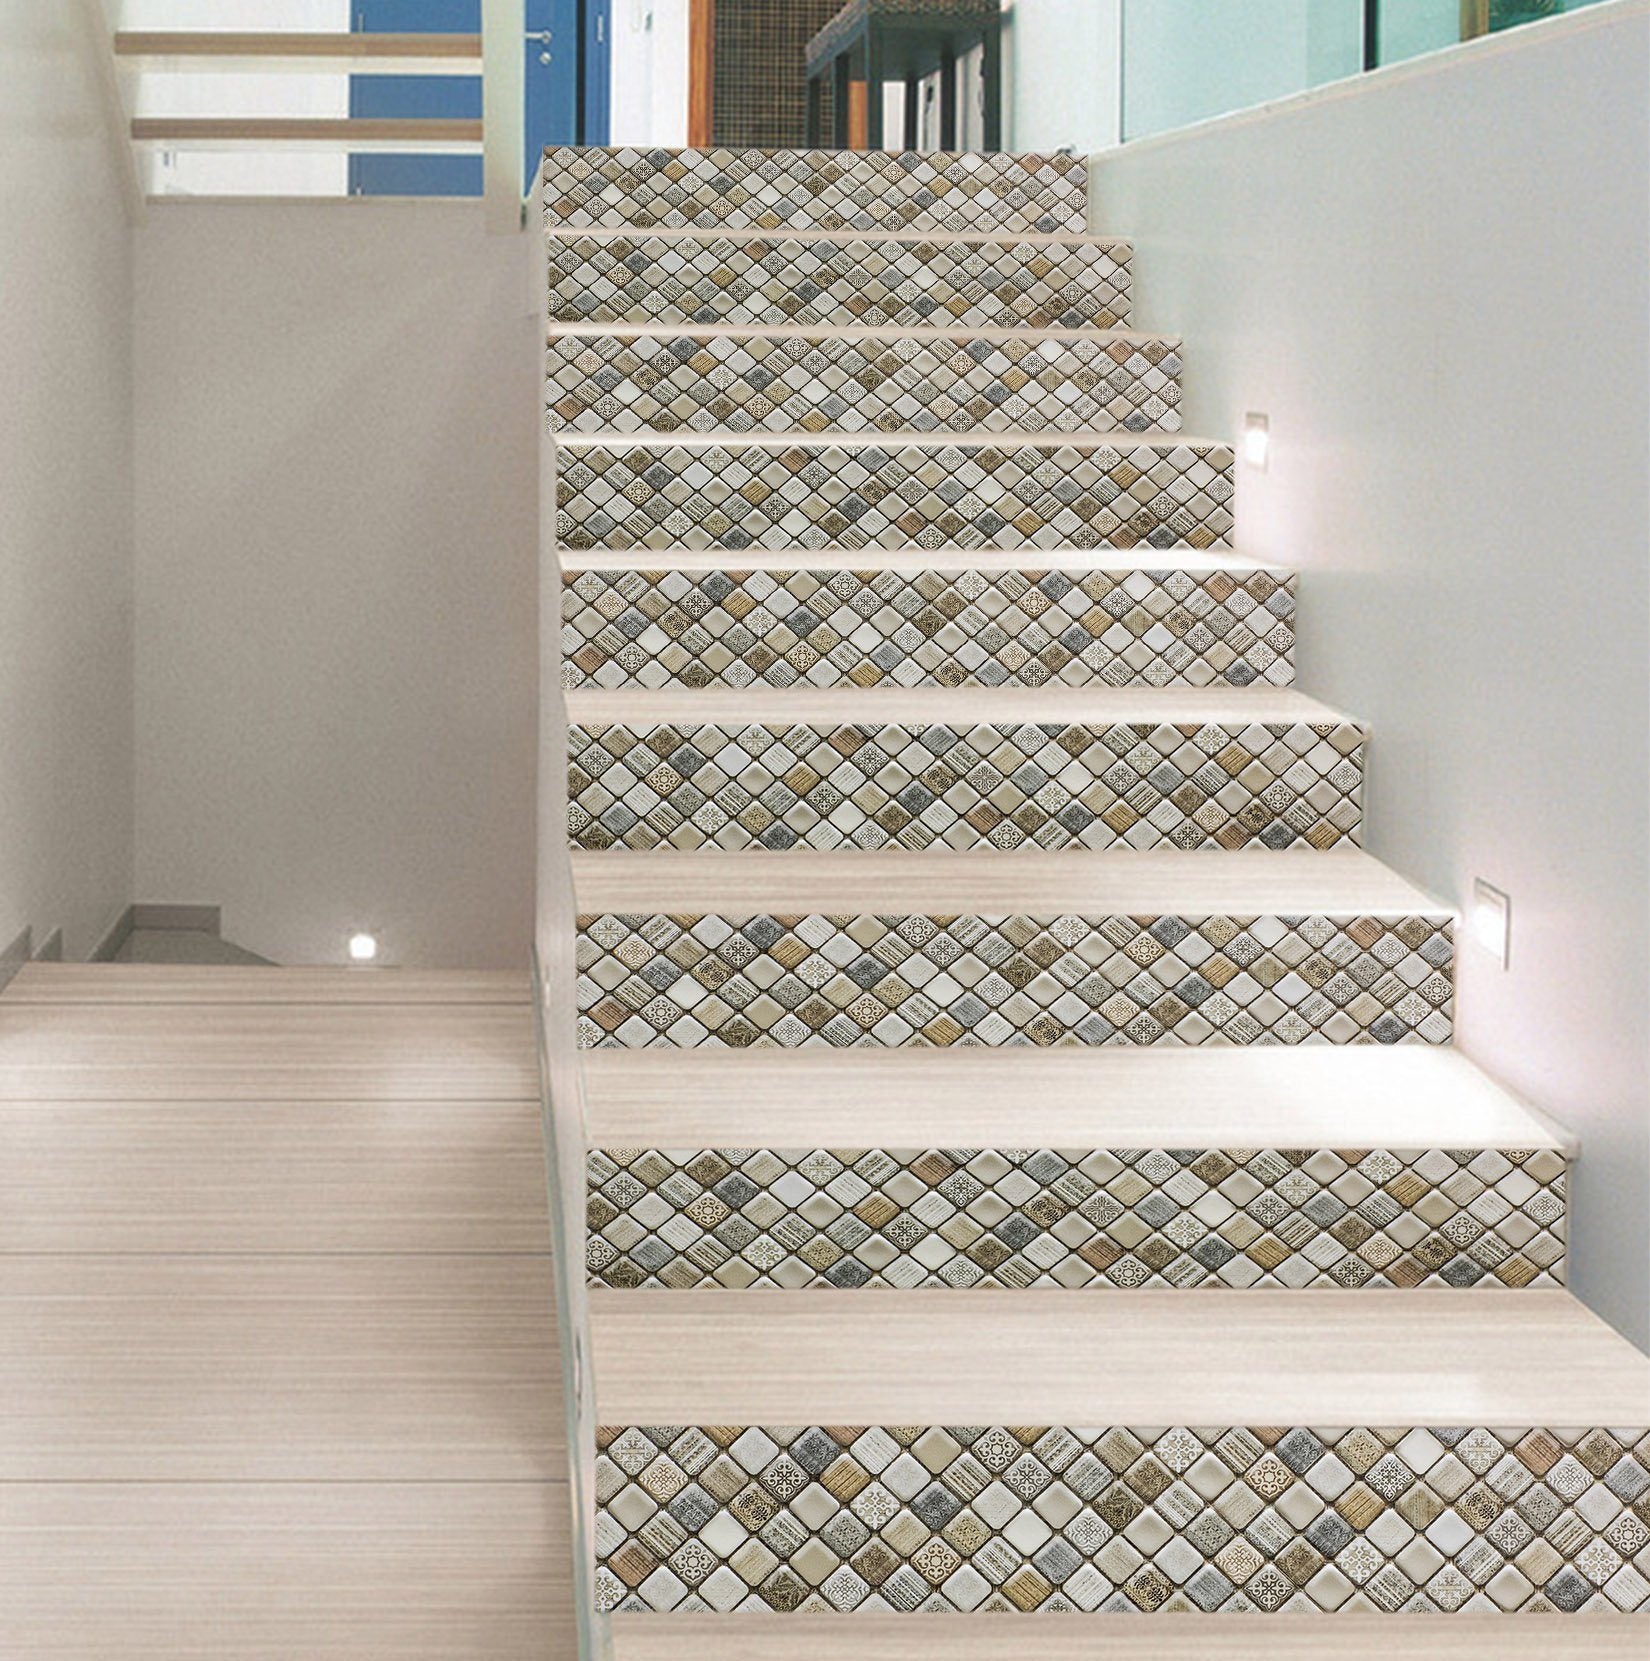 3D Retro Button Mosaic 912 Marble Tile Texture Stair Risers Wallpaper AJ Wallpaper 